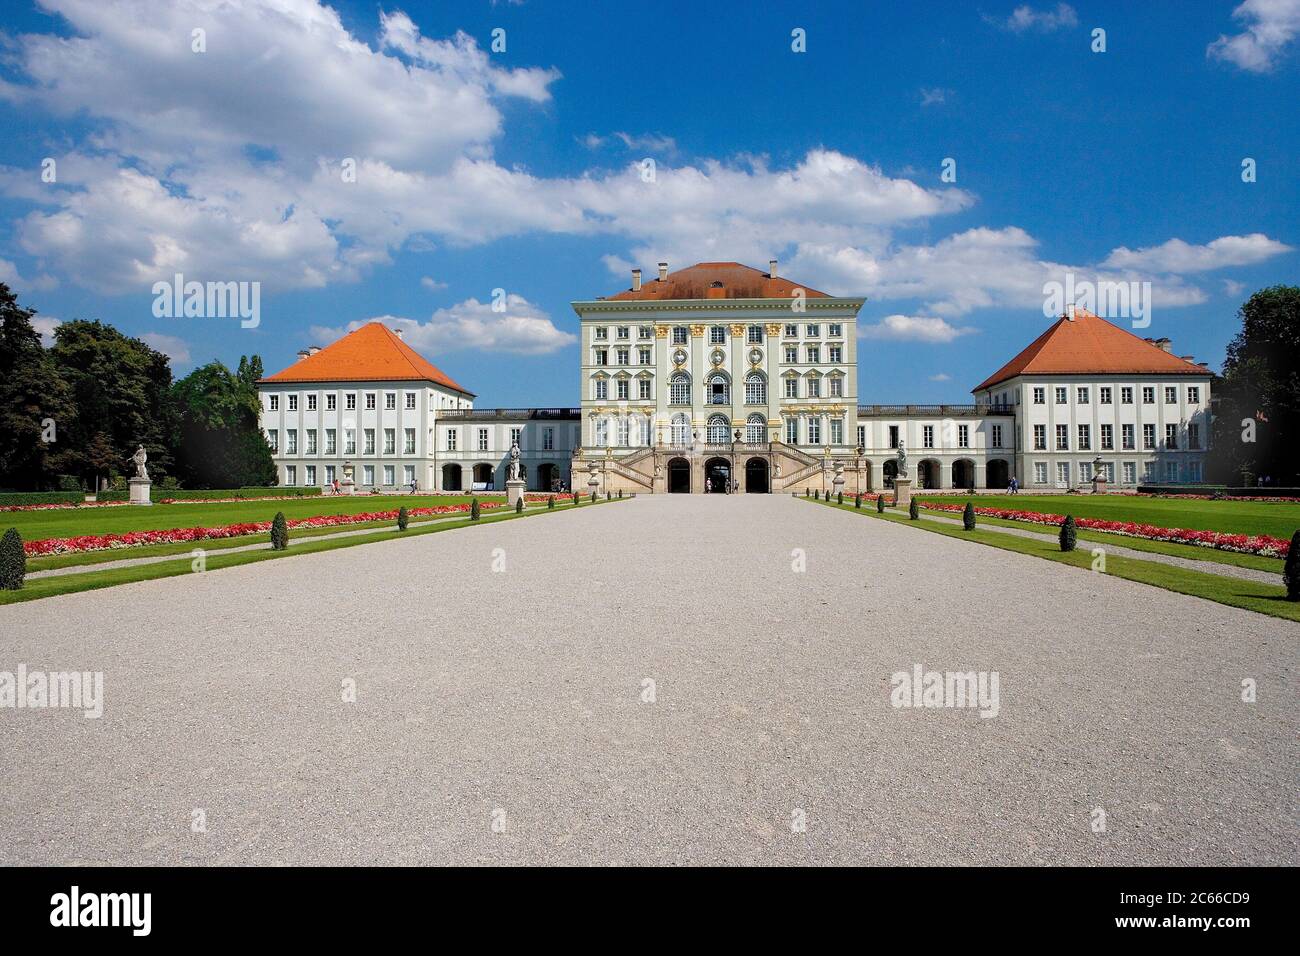 München, Schloss Nymphenburg, erbaut 1664 - 1675, nach dem Vorbild des piemontesischen Schlosses Venaria, Blick auf das Schloss aus dem französischen Garten, einem der großen königlichen Paläste Europas Stockfoto